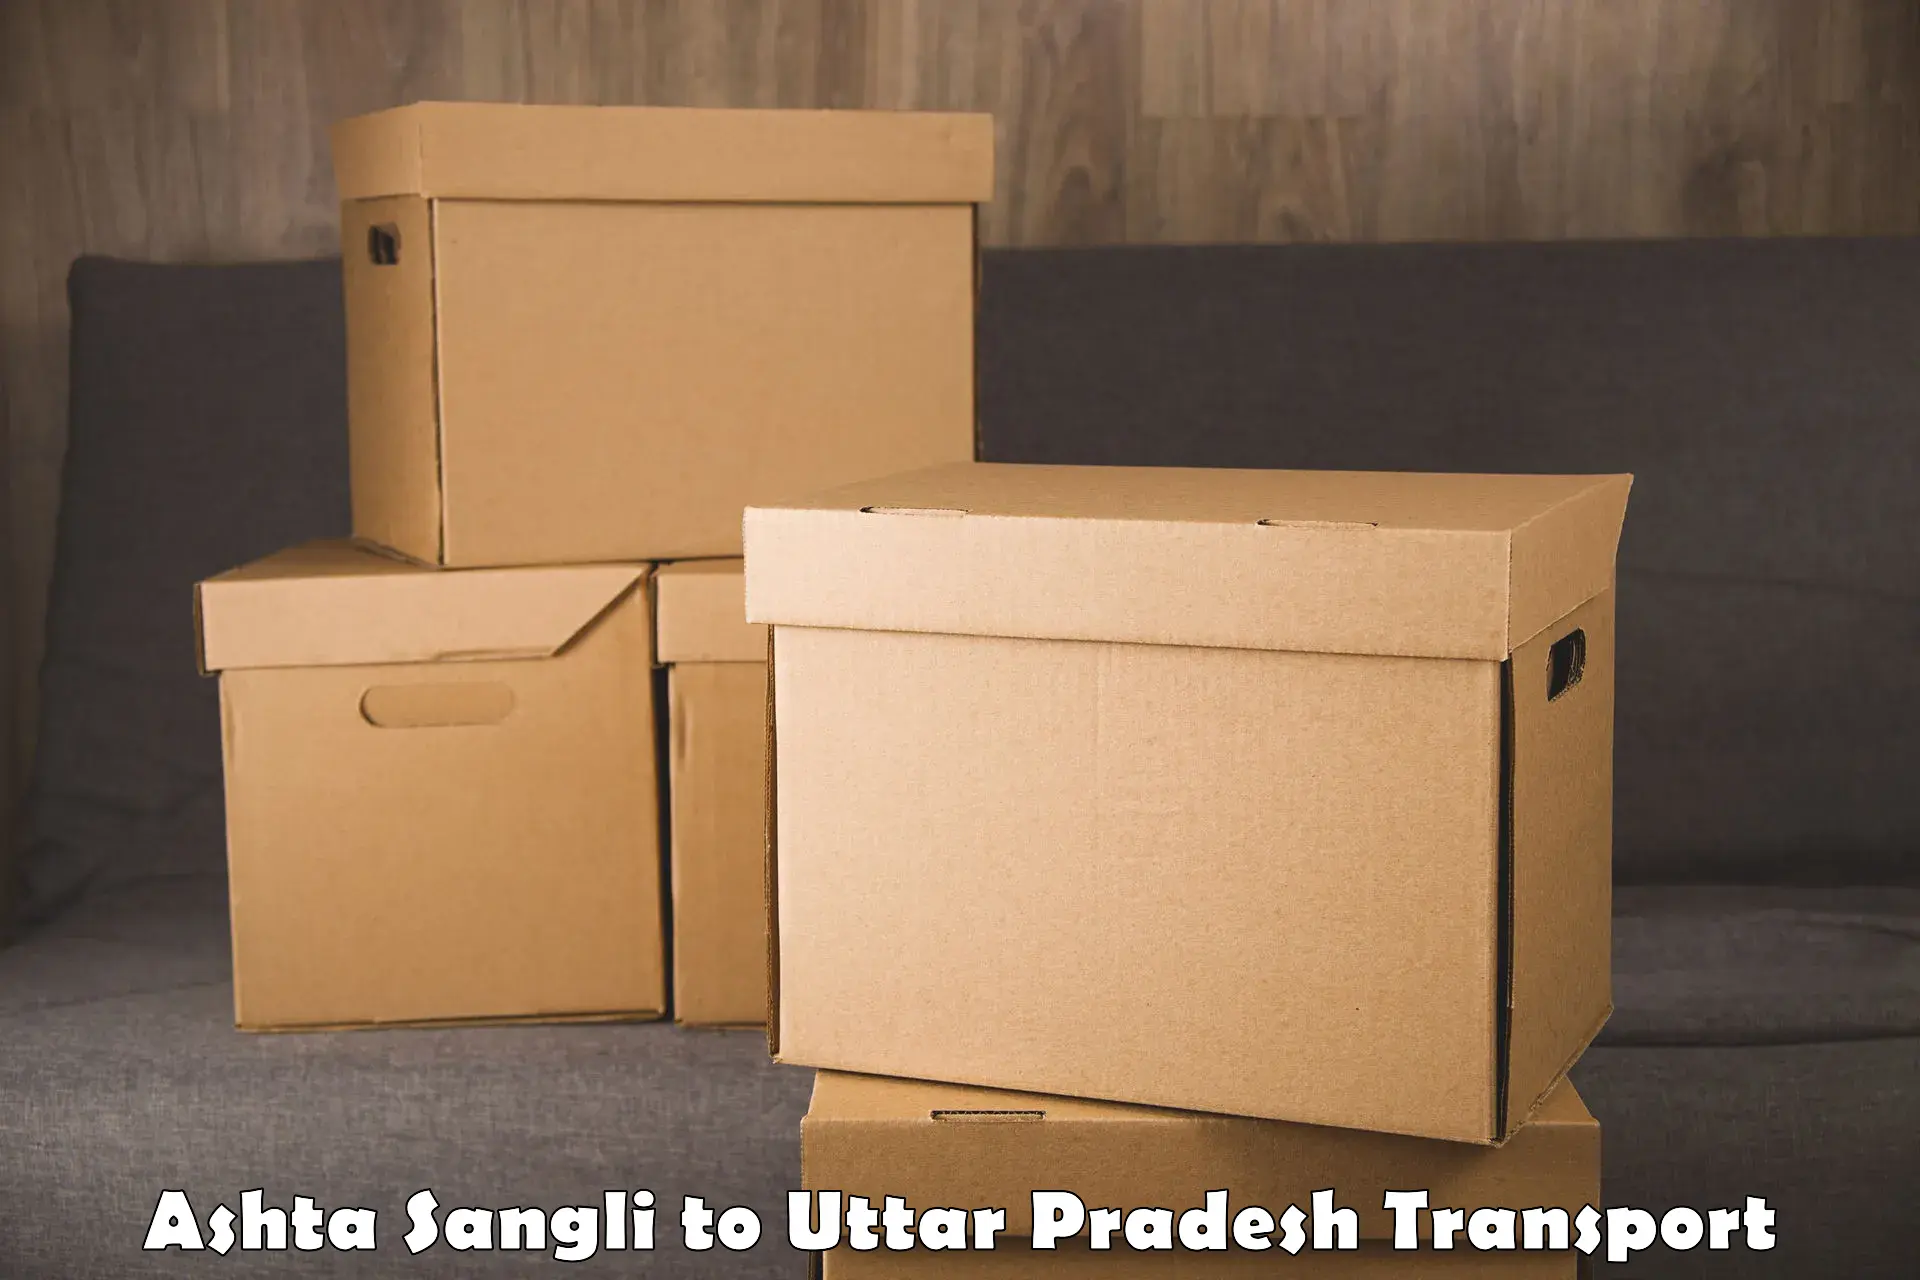 Pick up transport service Ashta Sangli to Naugarh